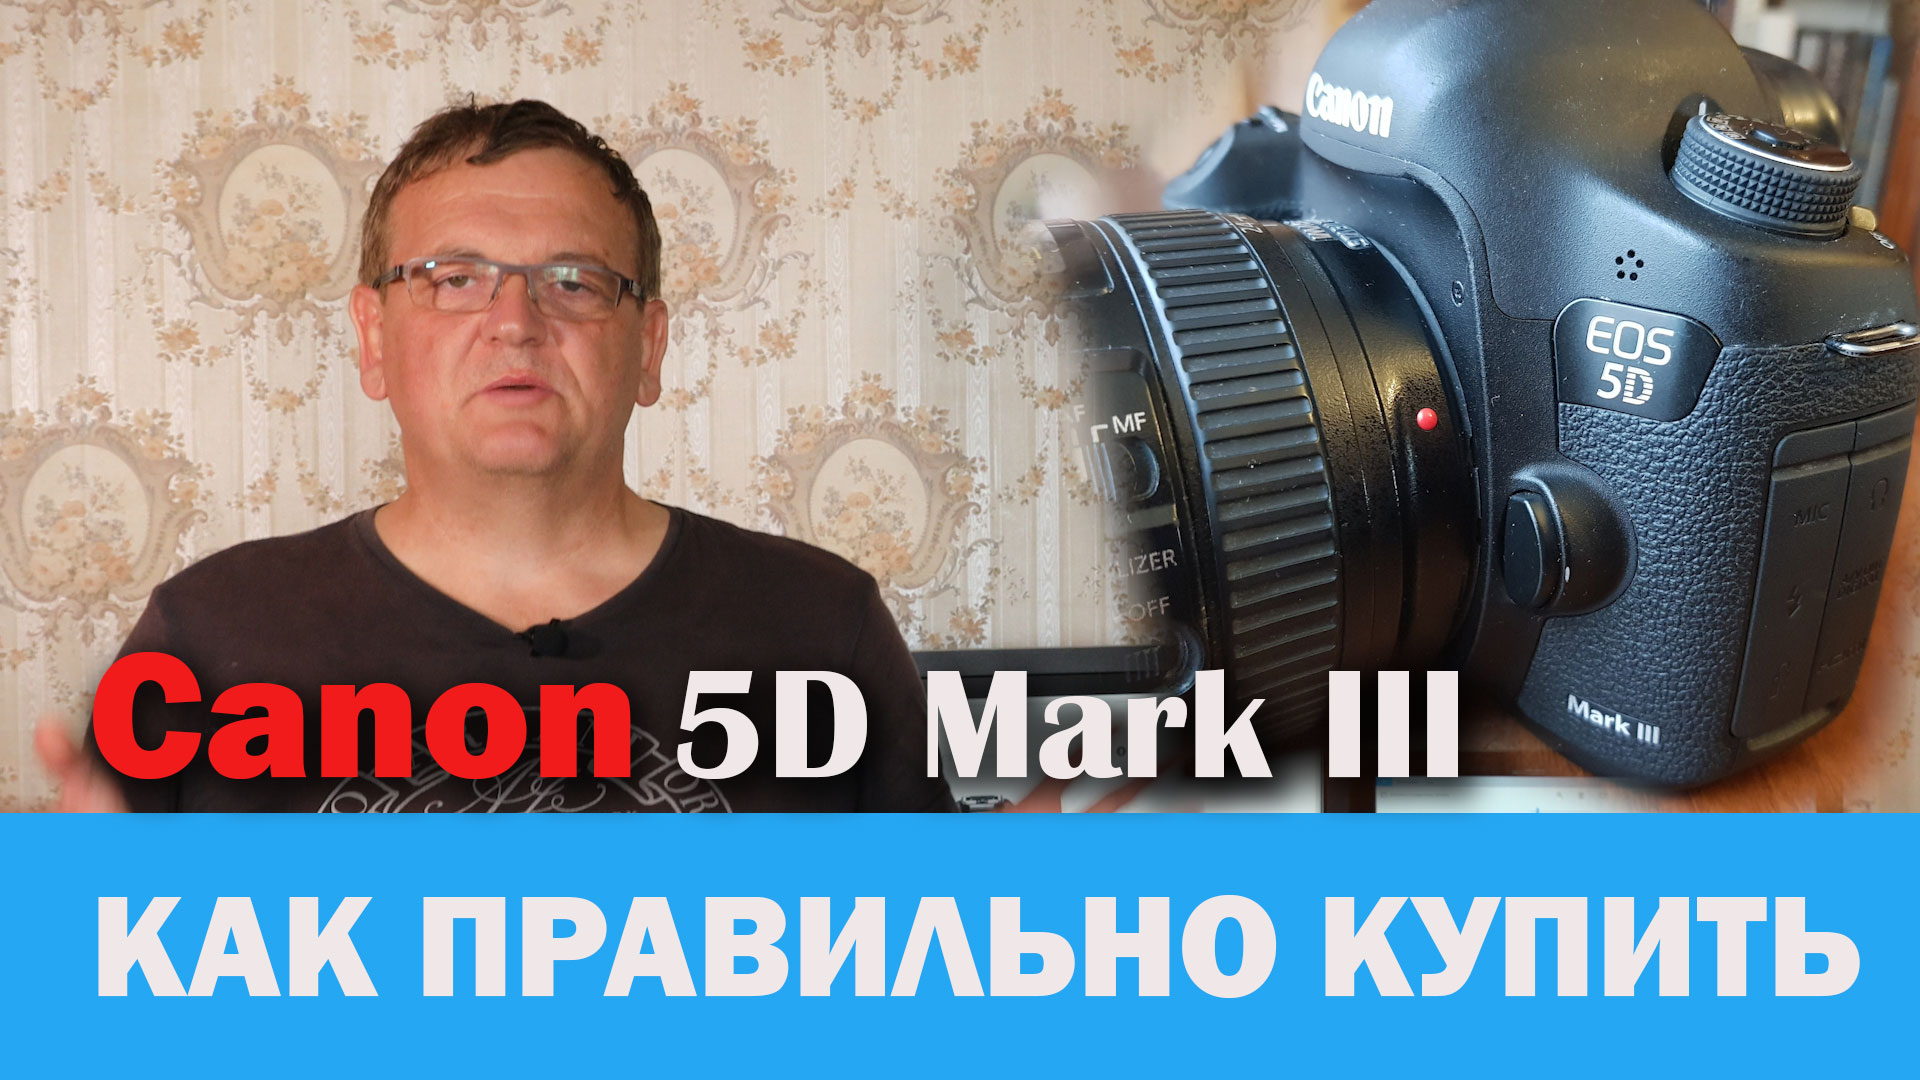 Подробнее о статье Как правильно купить / продать Canon 5D Mark III